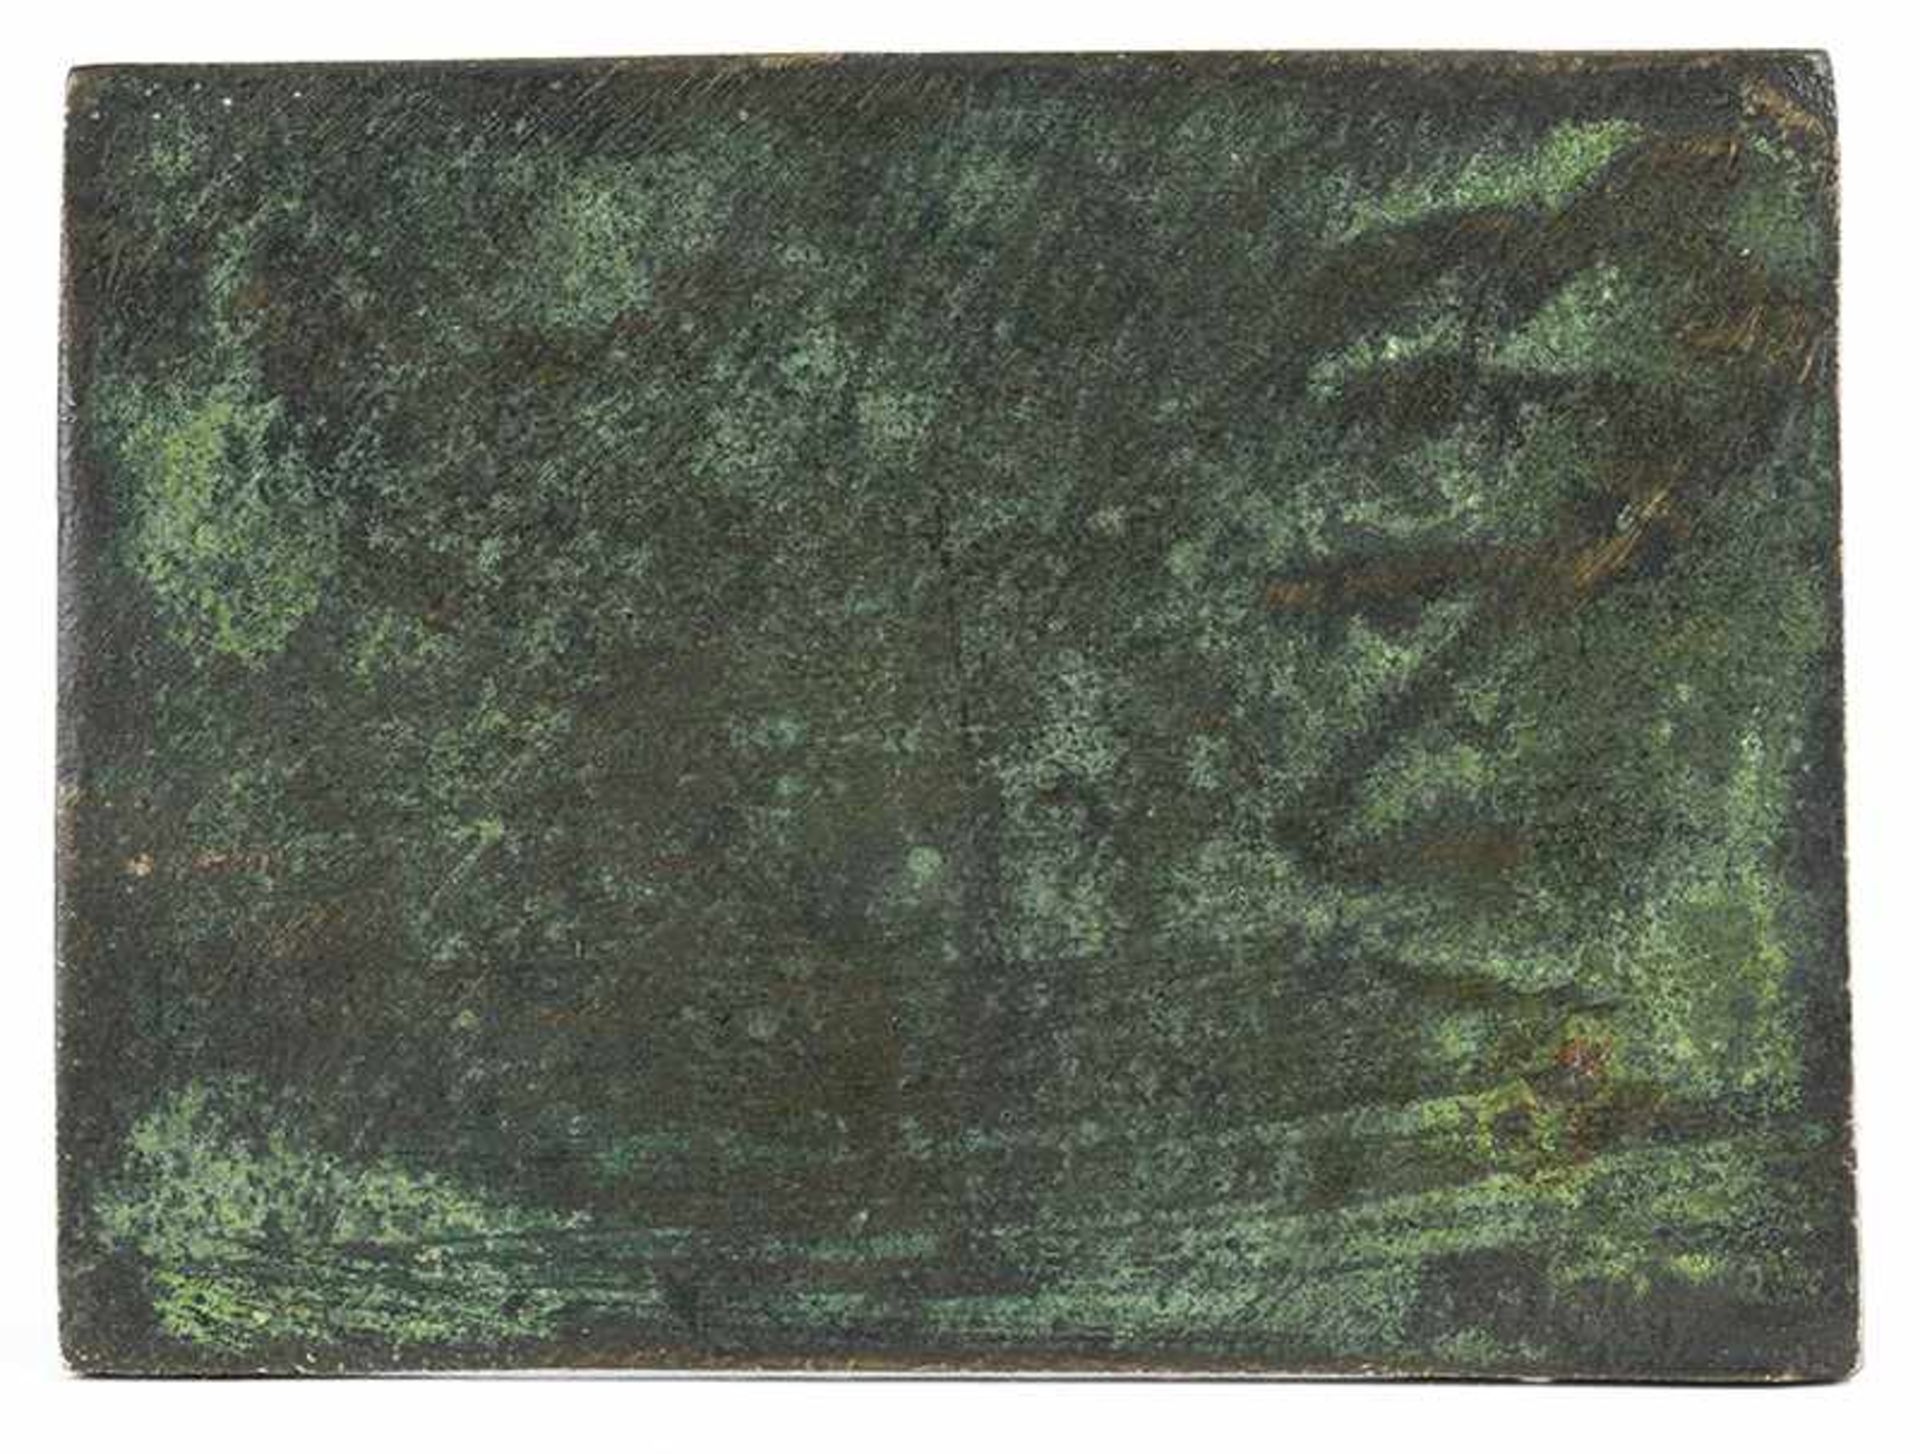 Andrea Briosco, 1470 Trento "" 1532 Padua RELIEFPLAKETTE: HULDIGUNG EINES HELDEN 7,5 x 10,2 cm. - Bild 3 aus 7